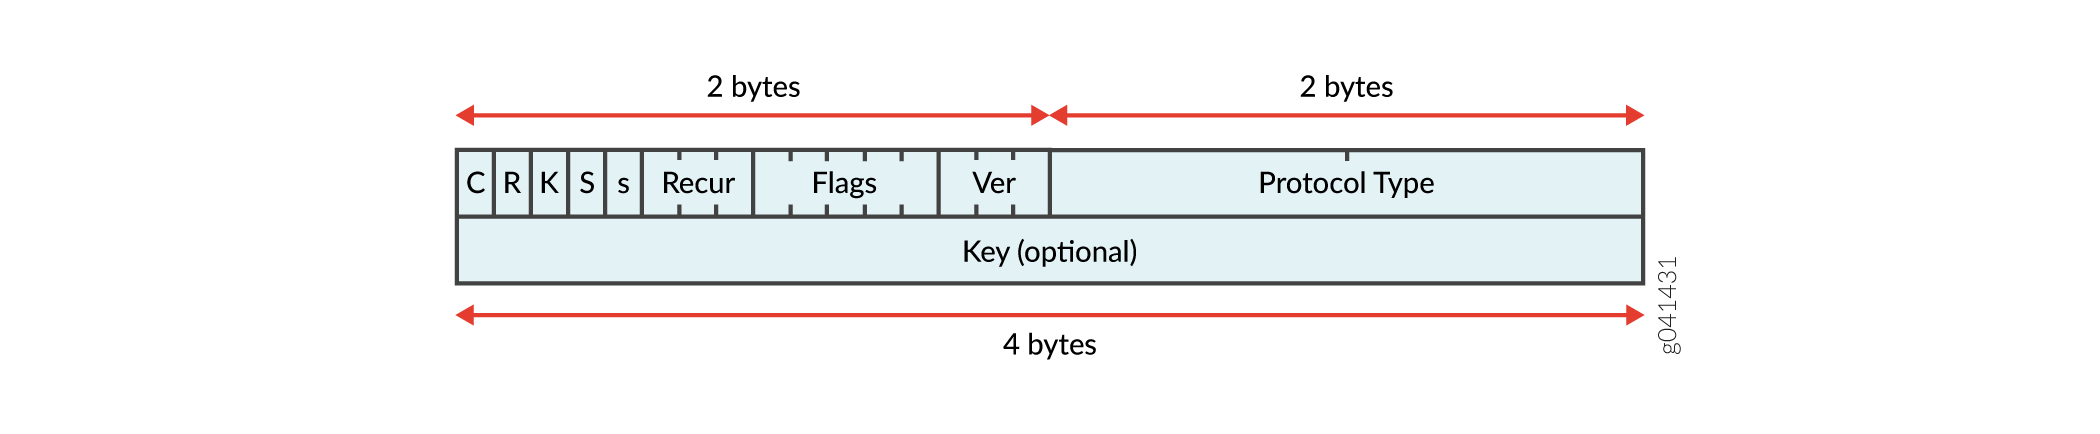 Estrutura de encapsulamento para tunelamento baseado em filtros em uma rede IPv4